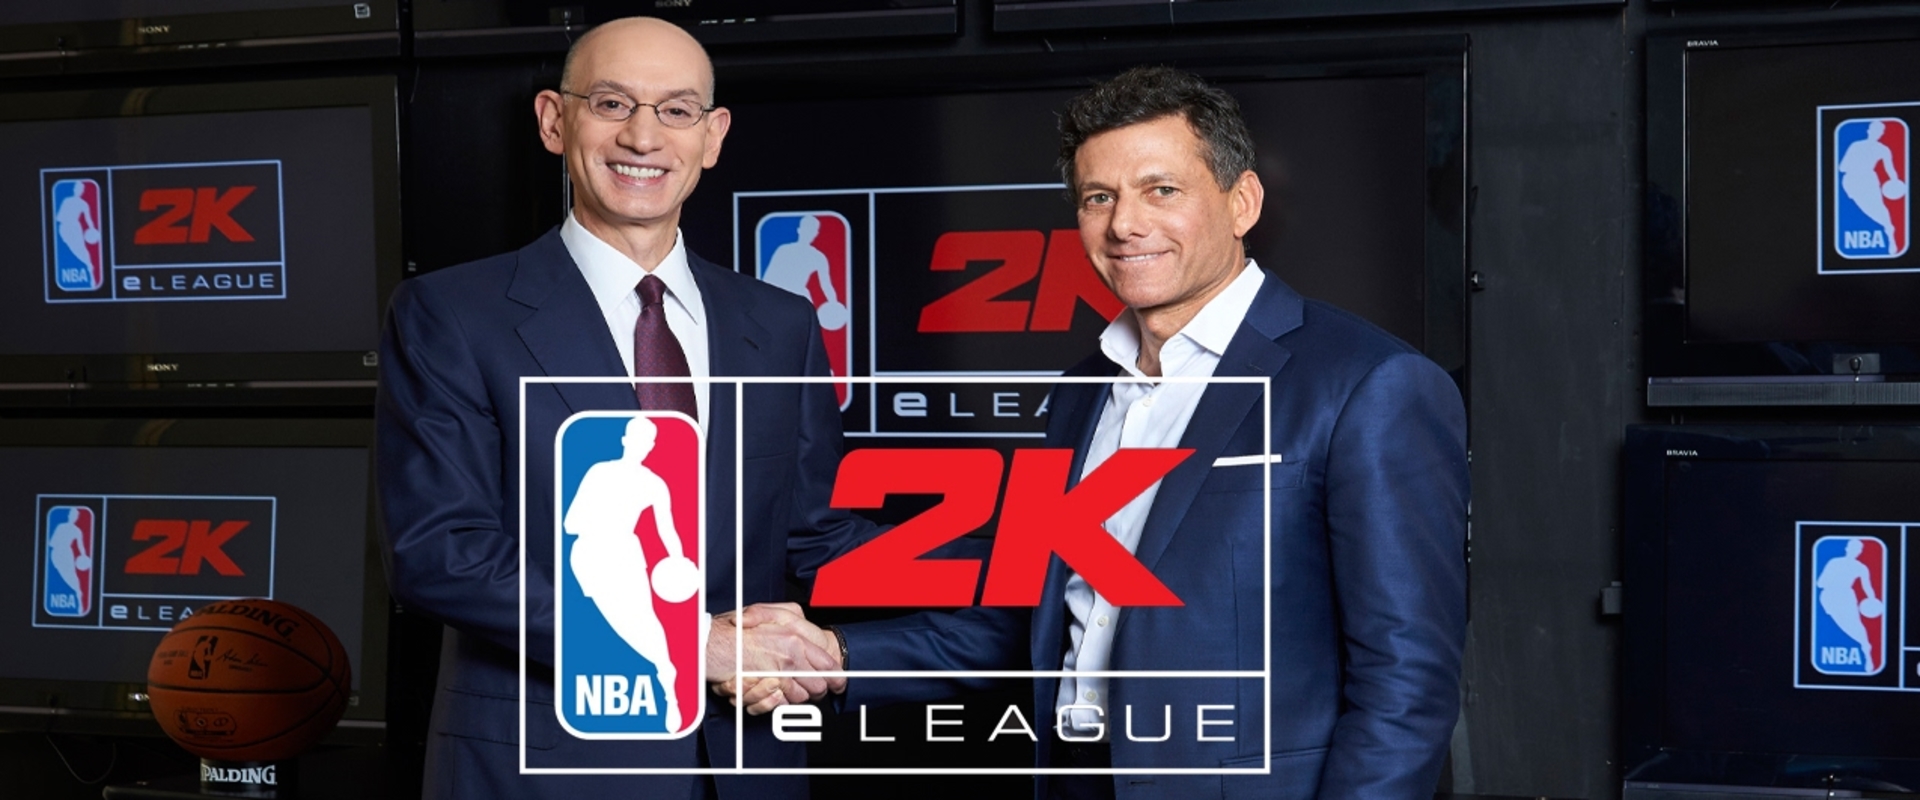 NBA nagyágyú az induló 2K games e-sport ligájának élén